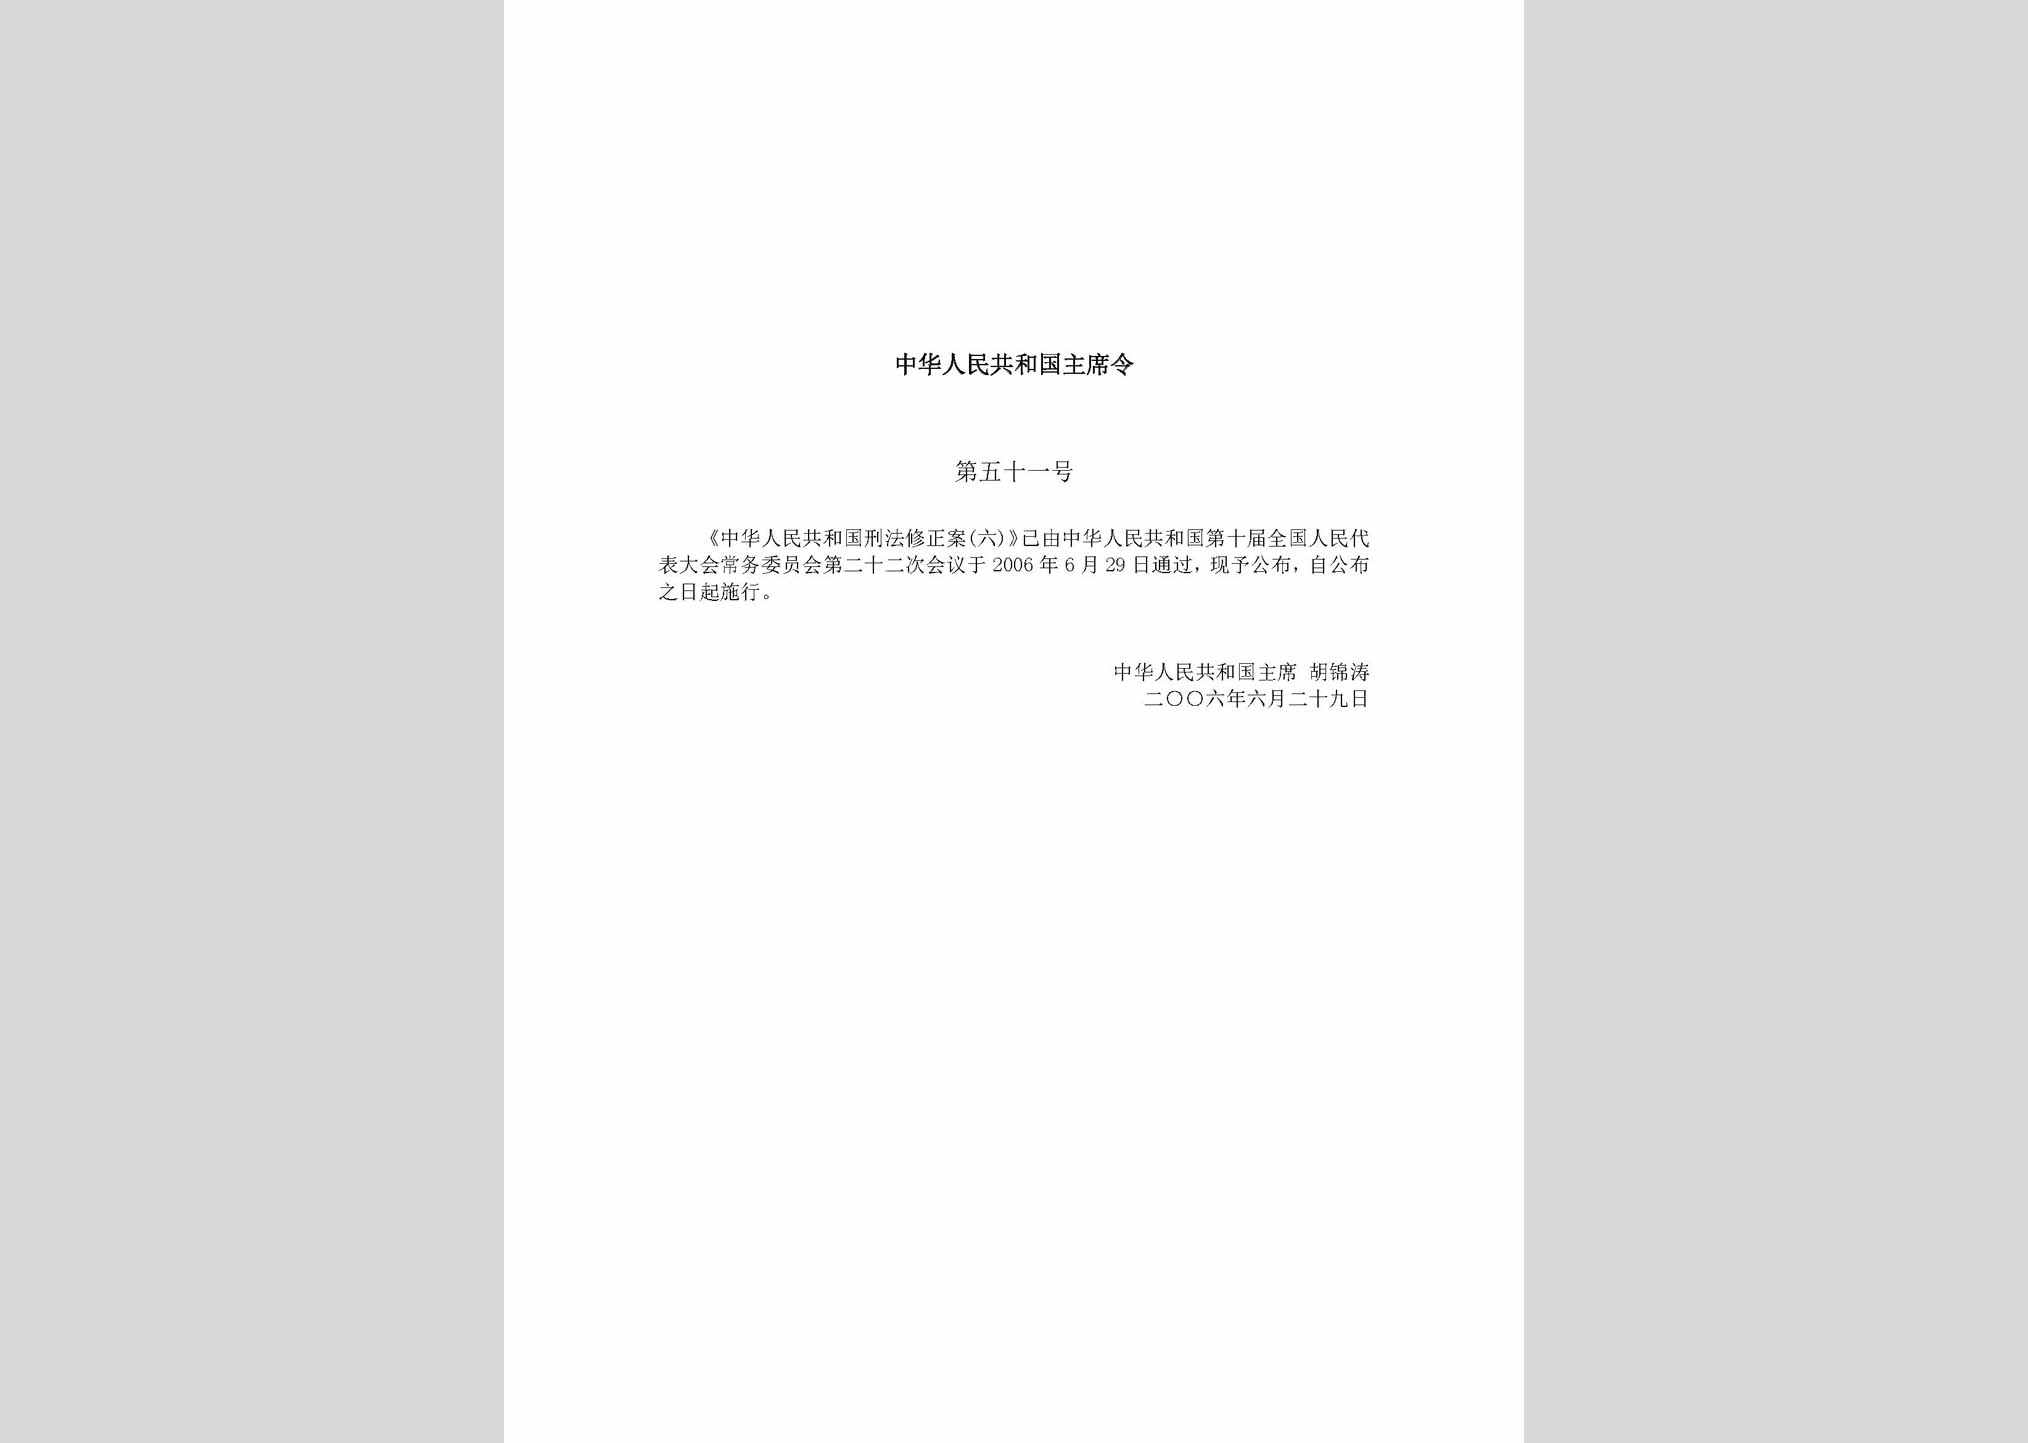 中华人民共和国主席令第五十一号：中华人民共和国刑法修正案(六)